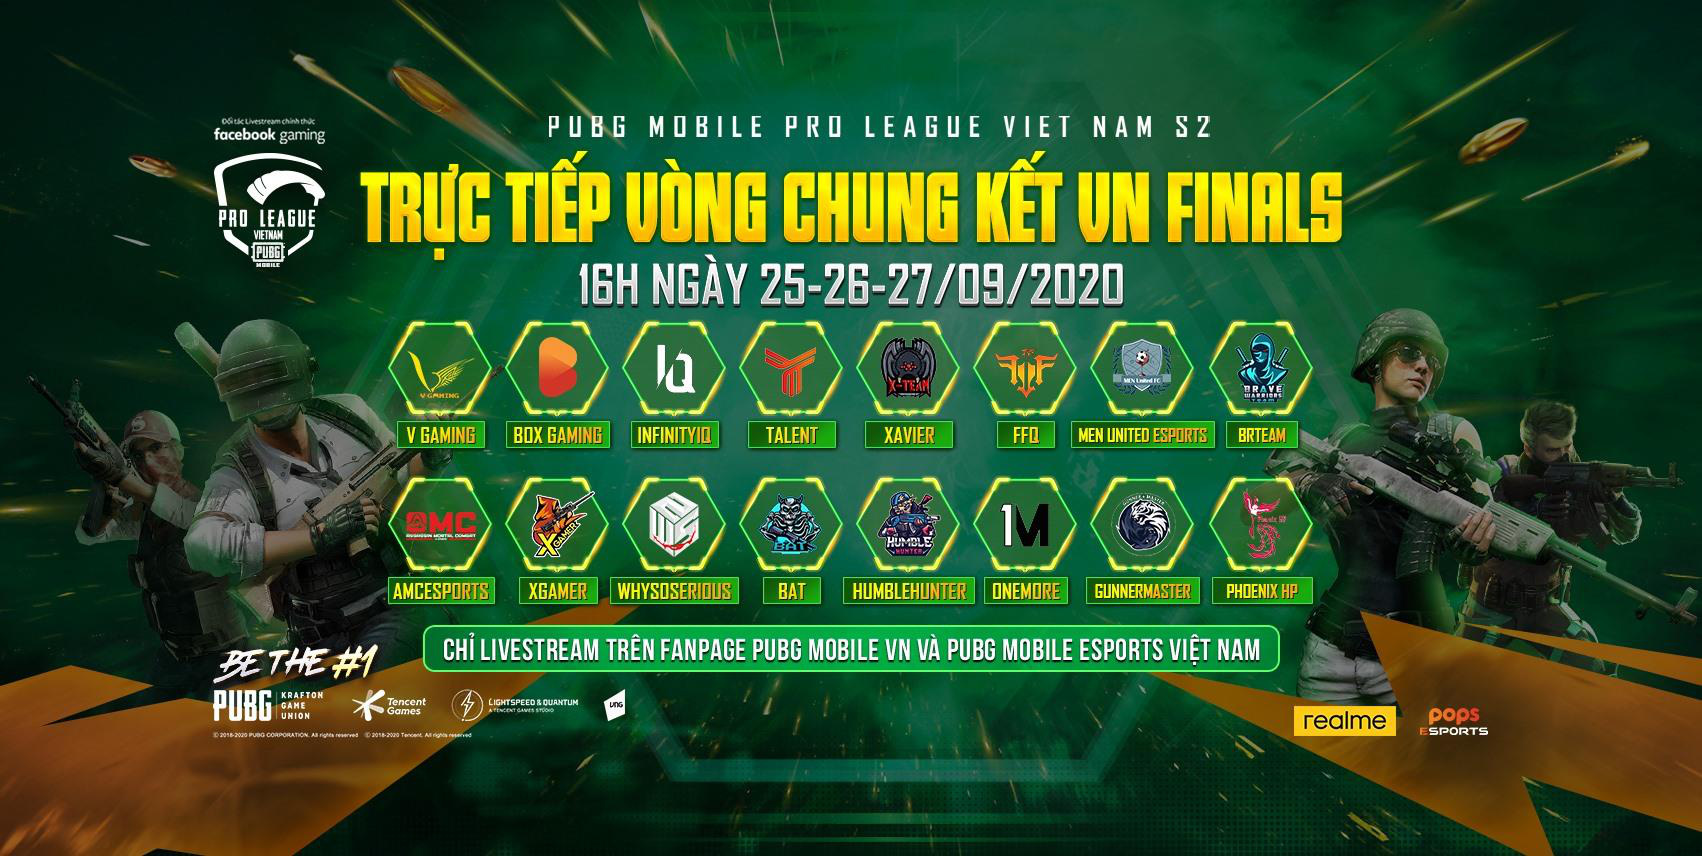 Chung kết PMPL VN S2 - Ngày 1: Cựu vương Box Gaming tiếp tục bị Vgaming đe dọa - Ảnh 1.